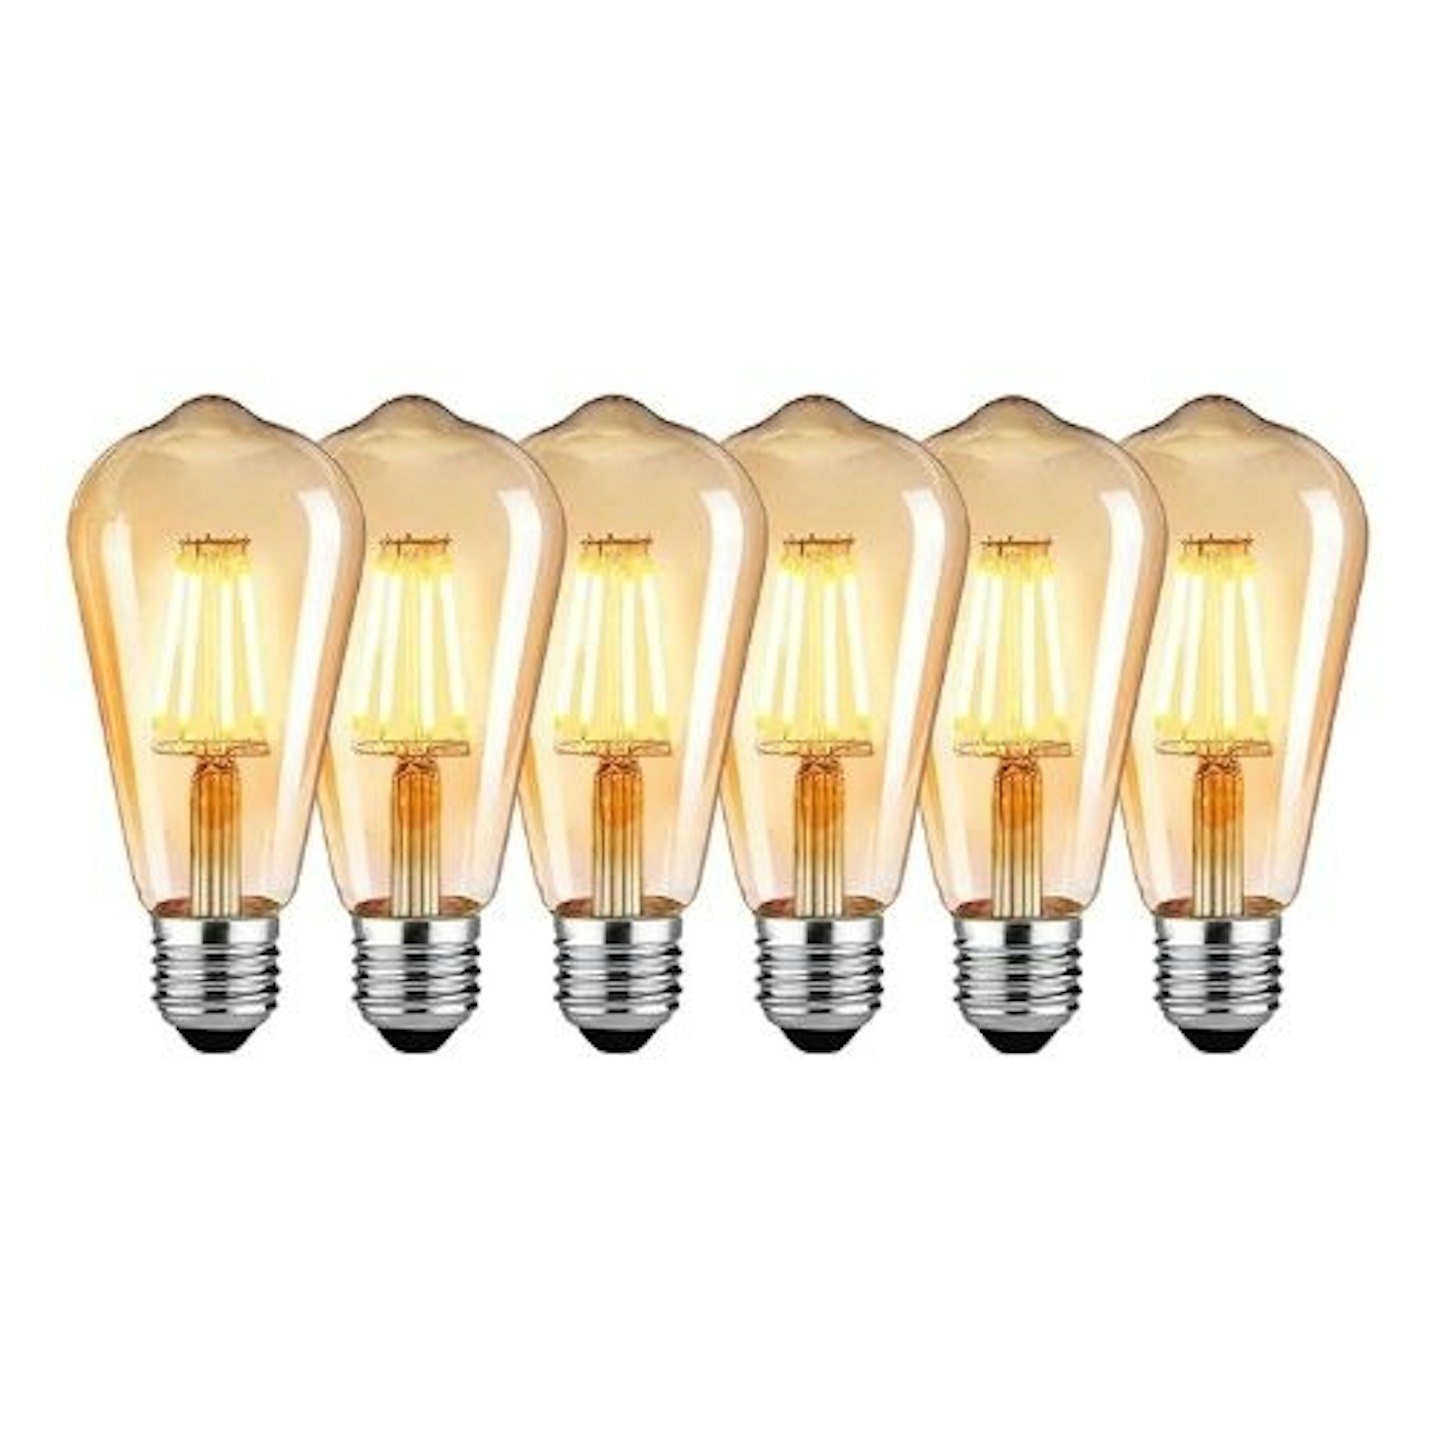 Vintage Light Bulbs (Pack of 6)